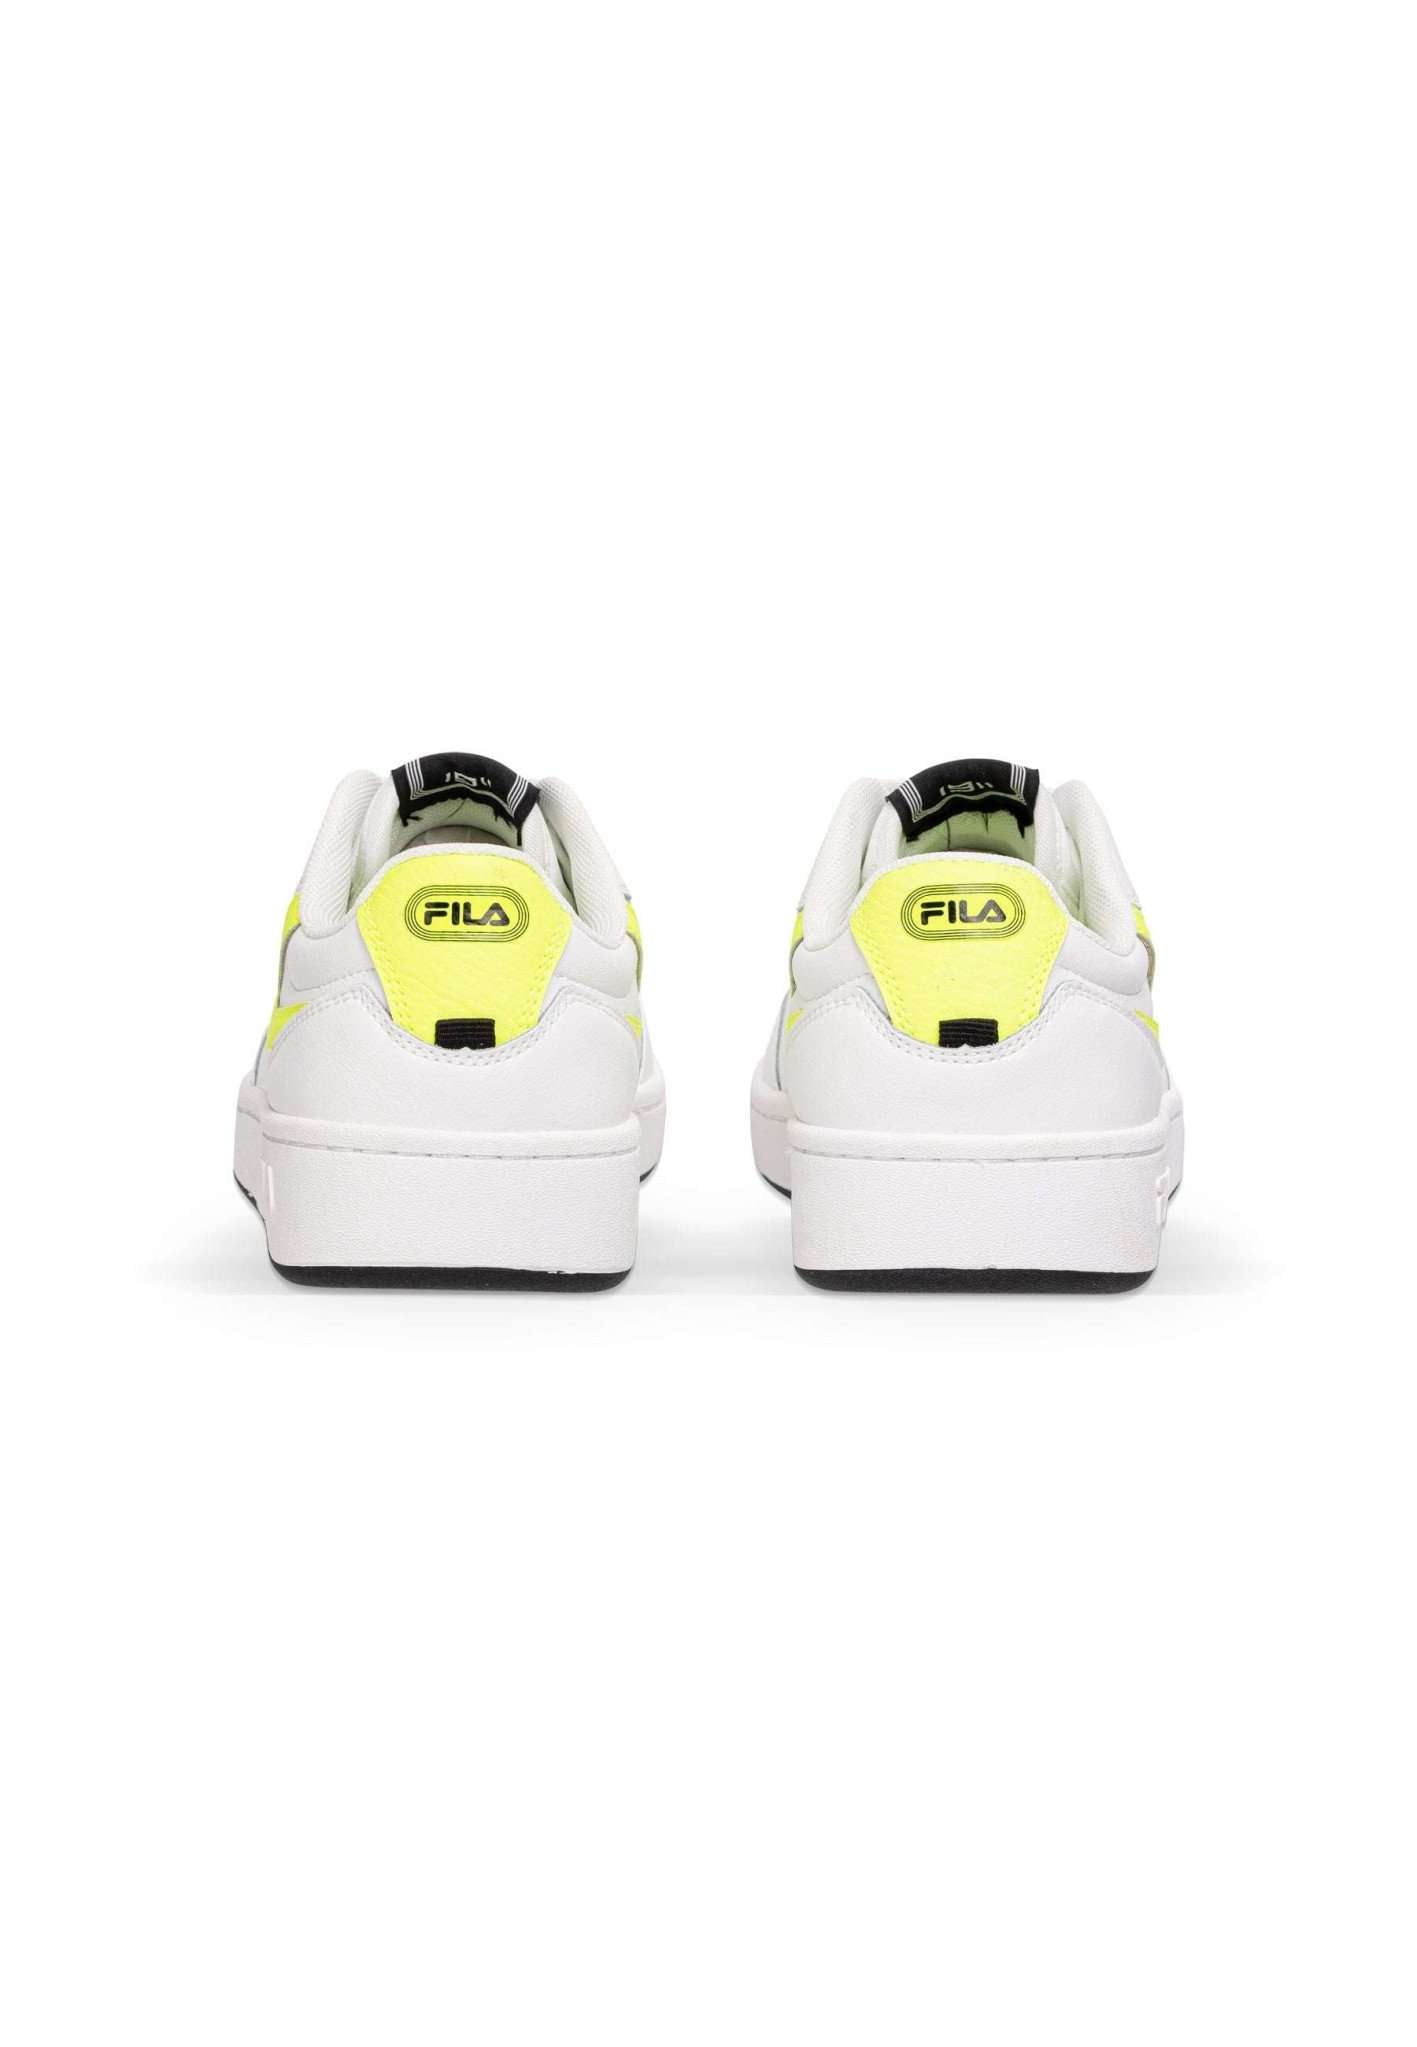 Fila Sevaro Wmn in White-Safety Yellow Sneakers Fila   